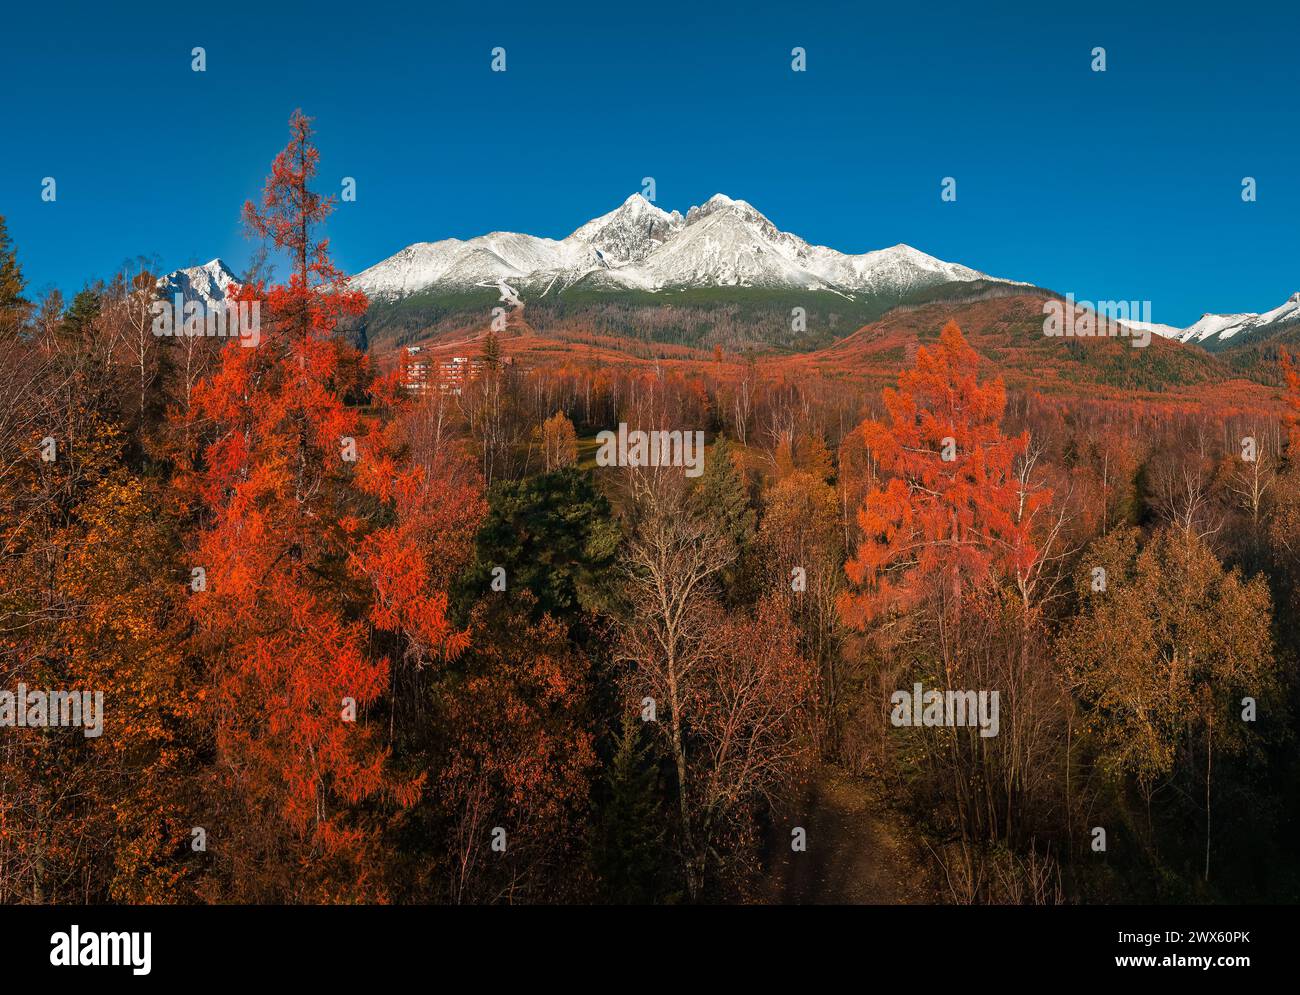 Tatranske Matliare, Slowakei - aus der Vogelperspektive auf die schneebedeckten Berge des Lomnicky Peak in der Hohen Tatra mit wunderschönem rot-orangen Herbst tr Stockfoto